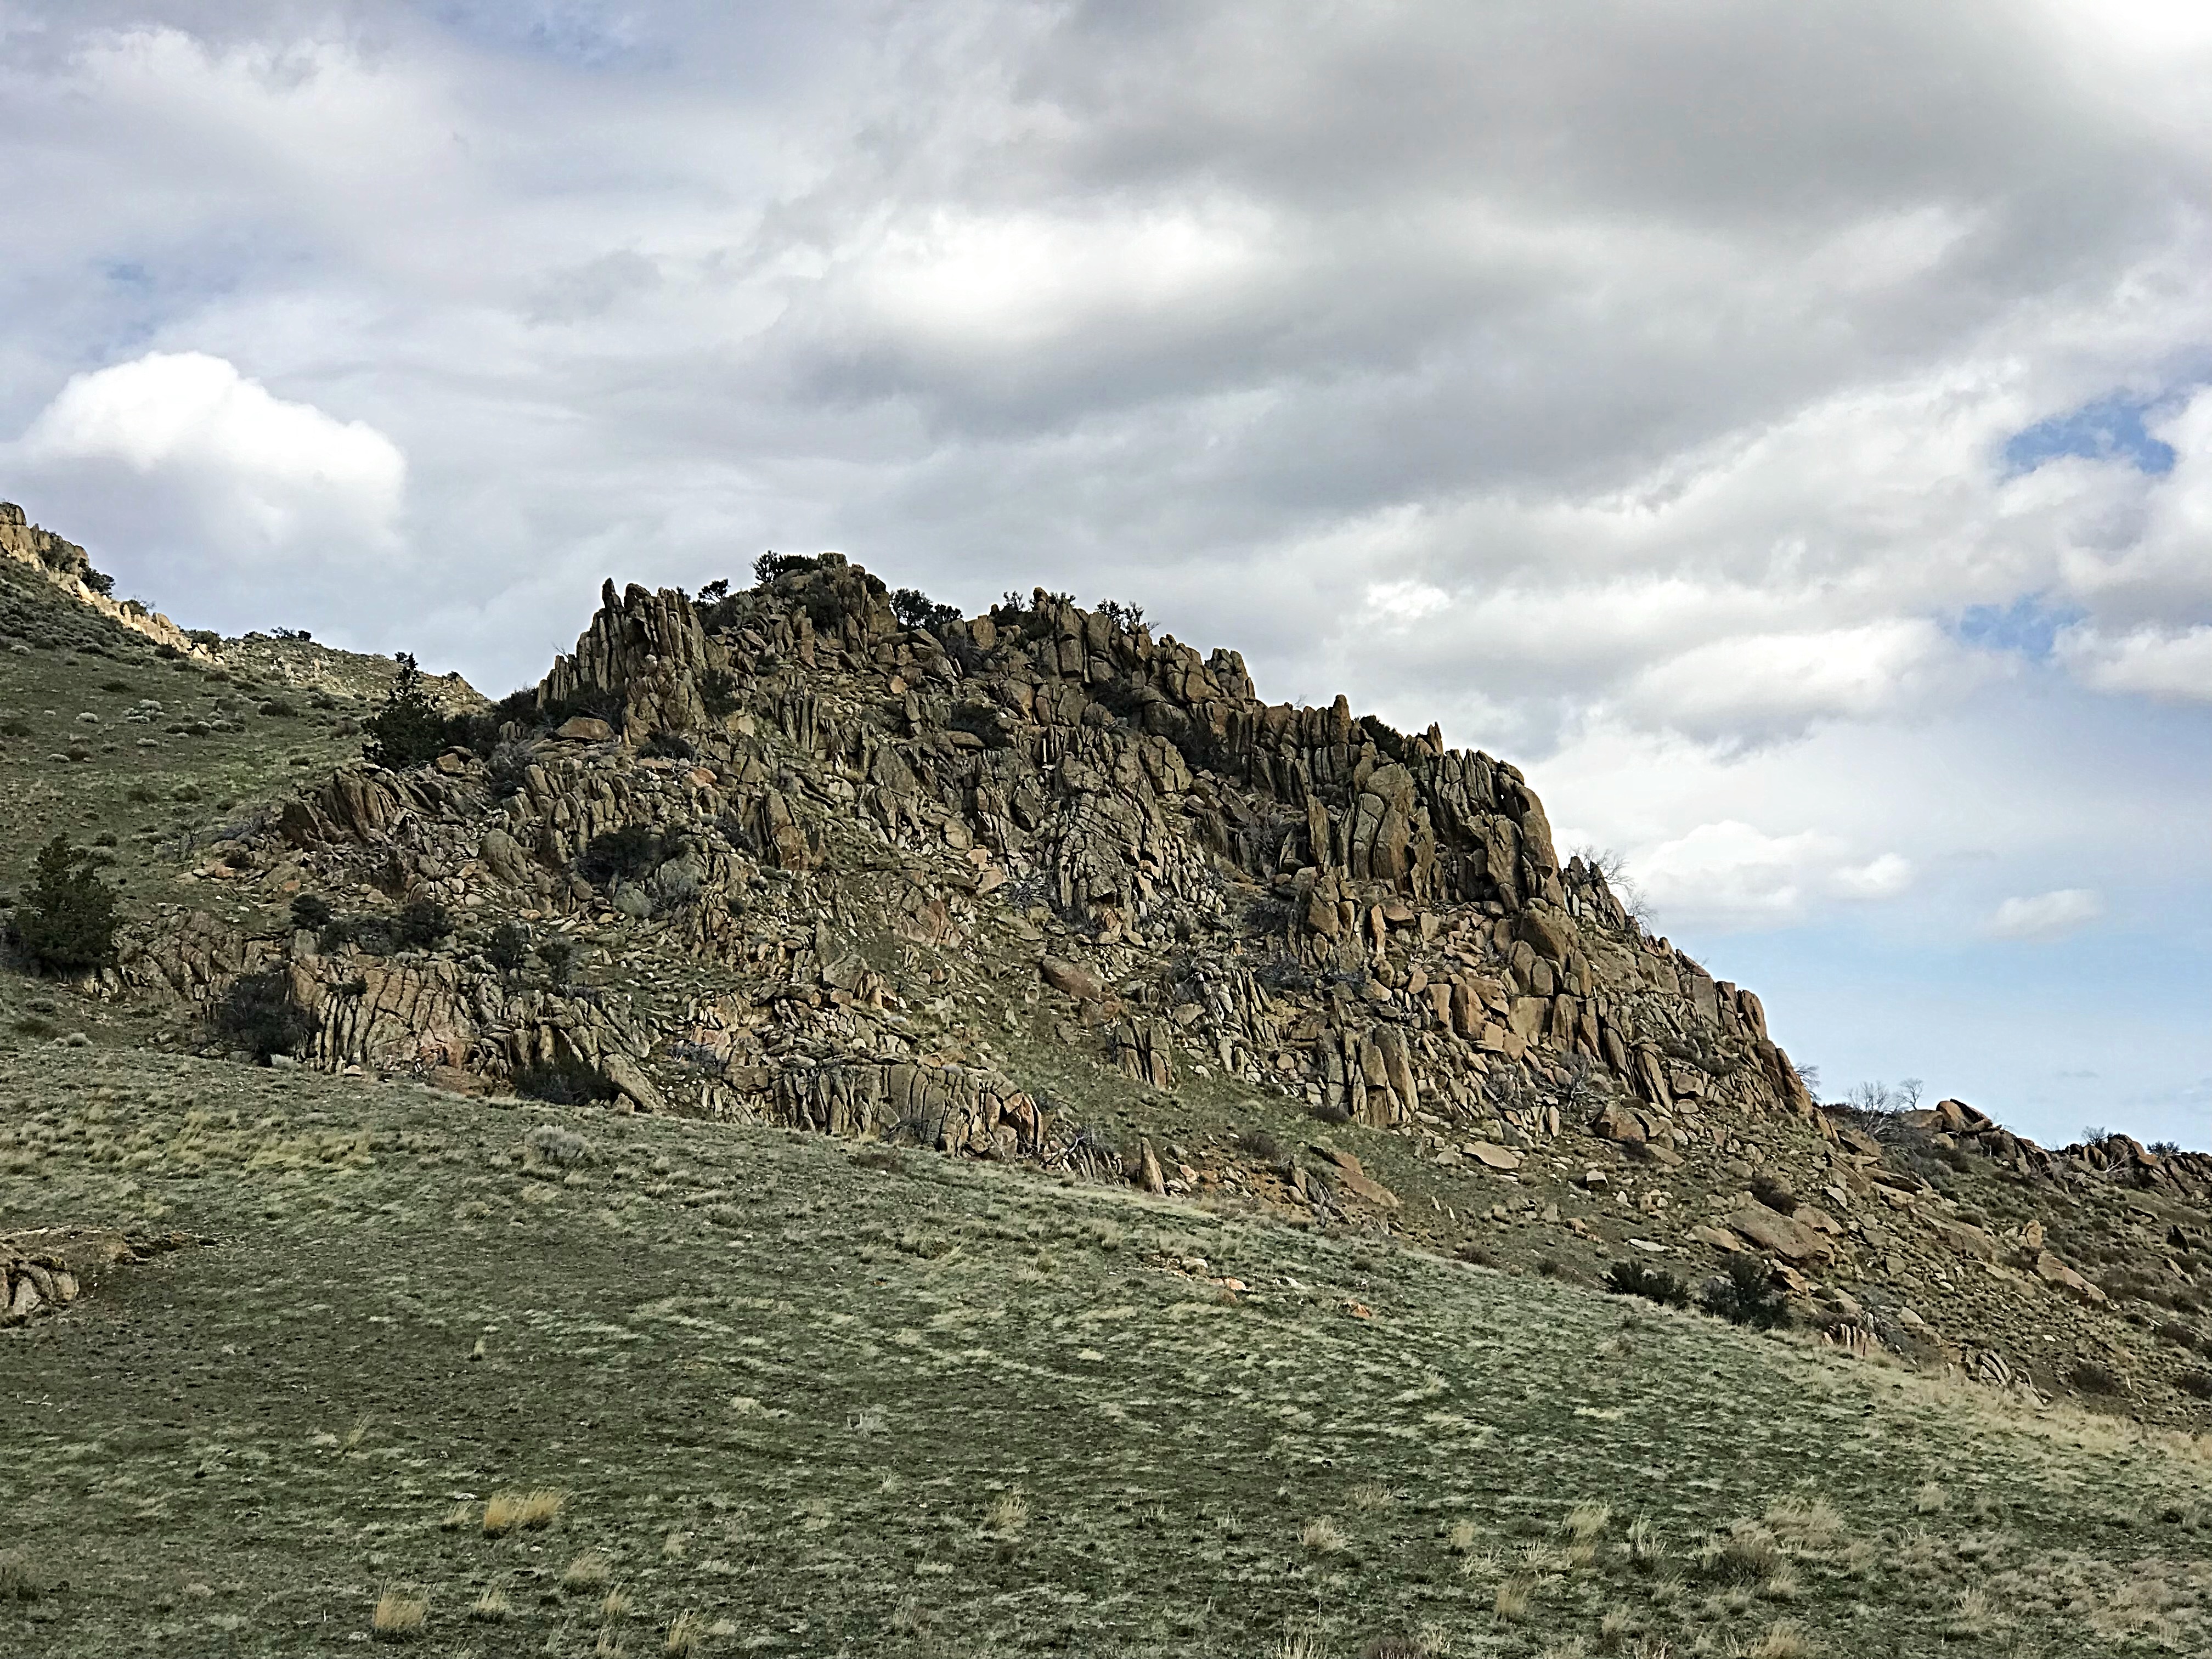 This granite outcrop is located in the Peak 5580/Peak 5428 saddle.